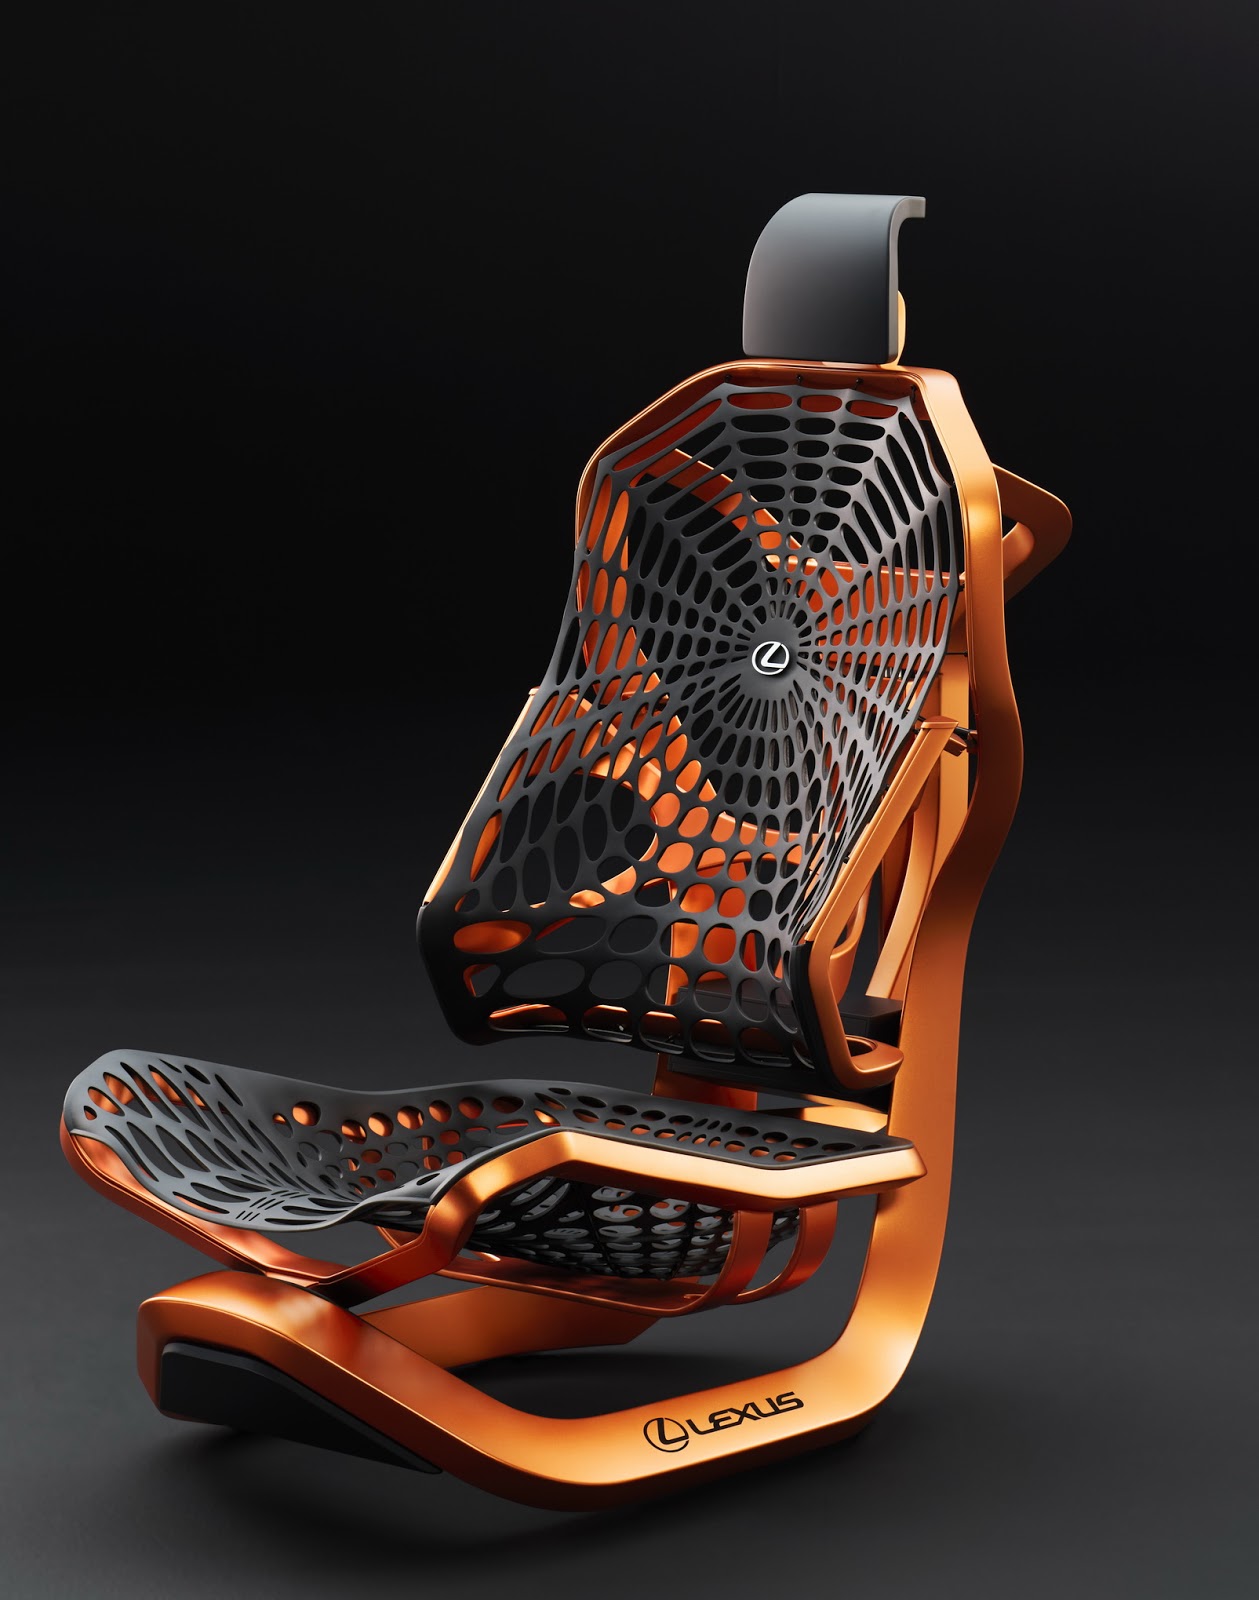 lexus-kinetic-seat-concept-paris-2